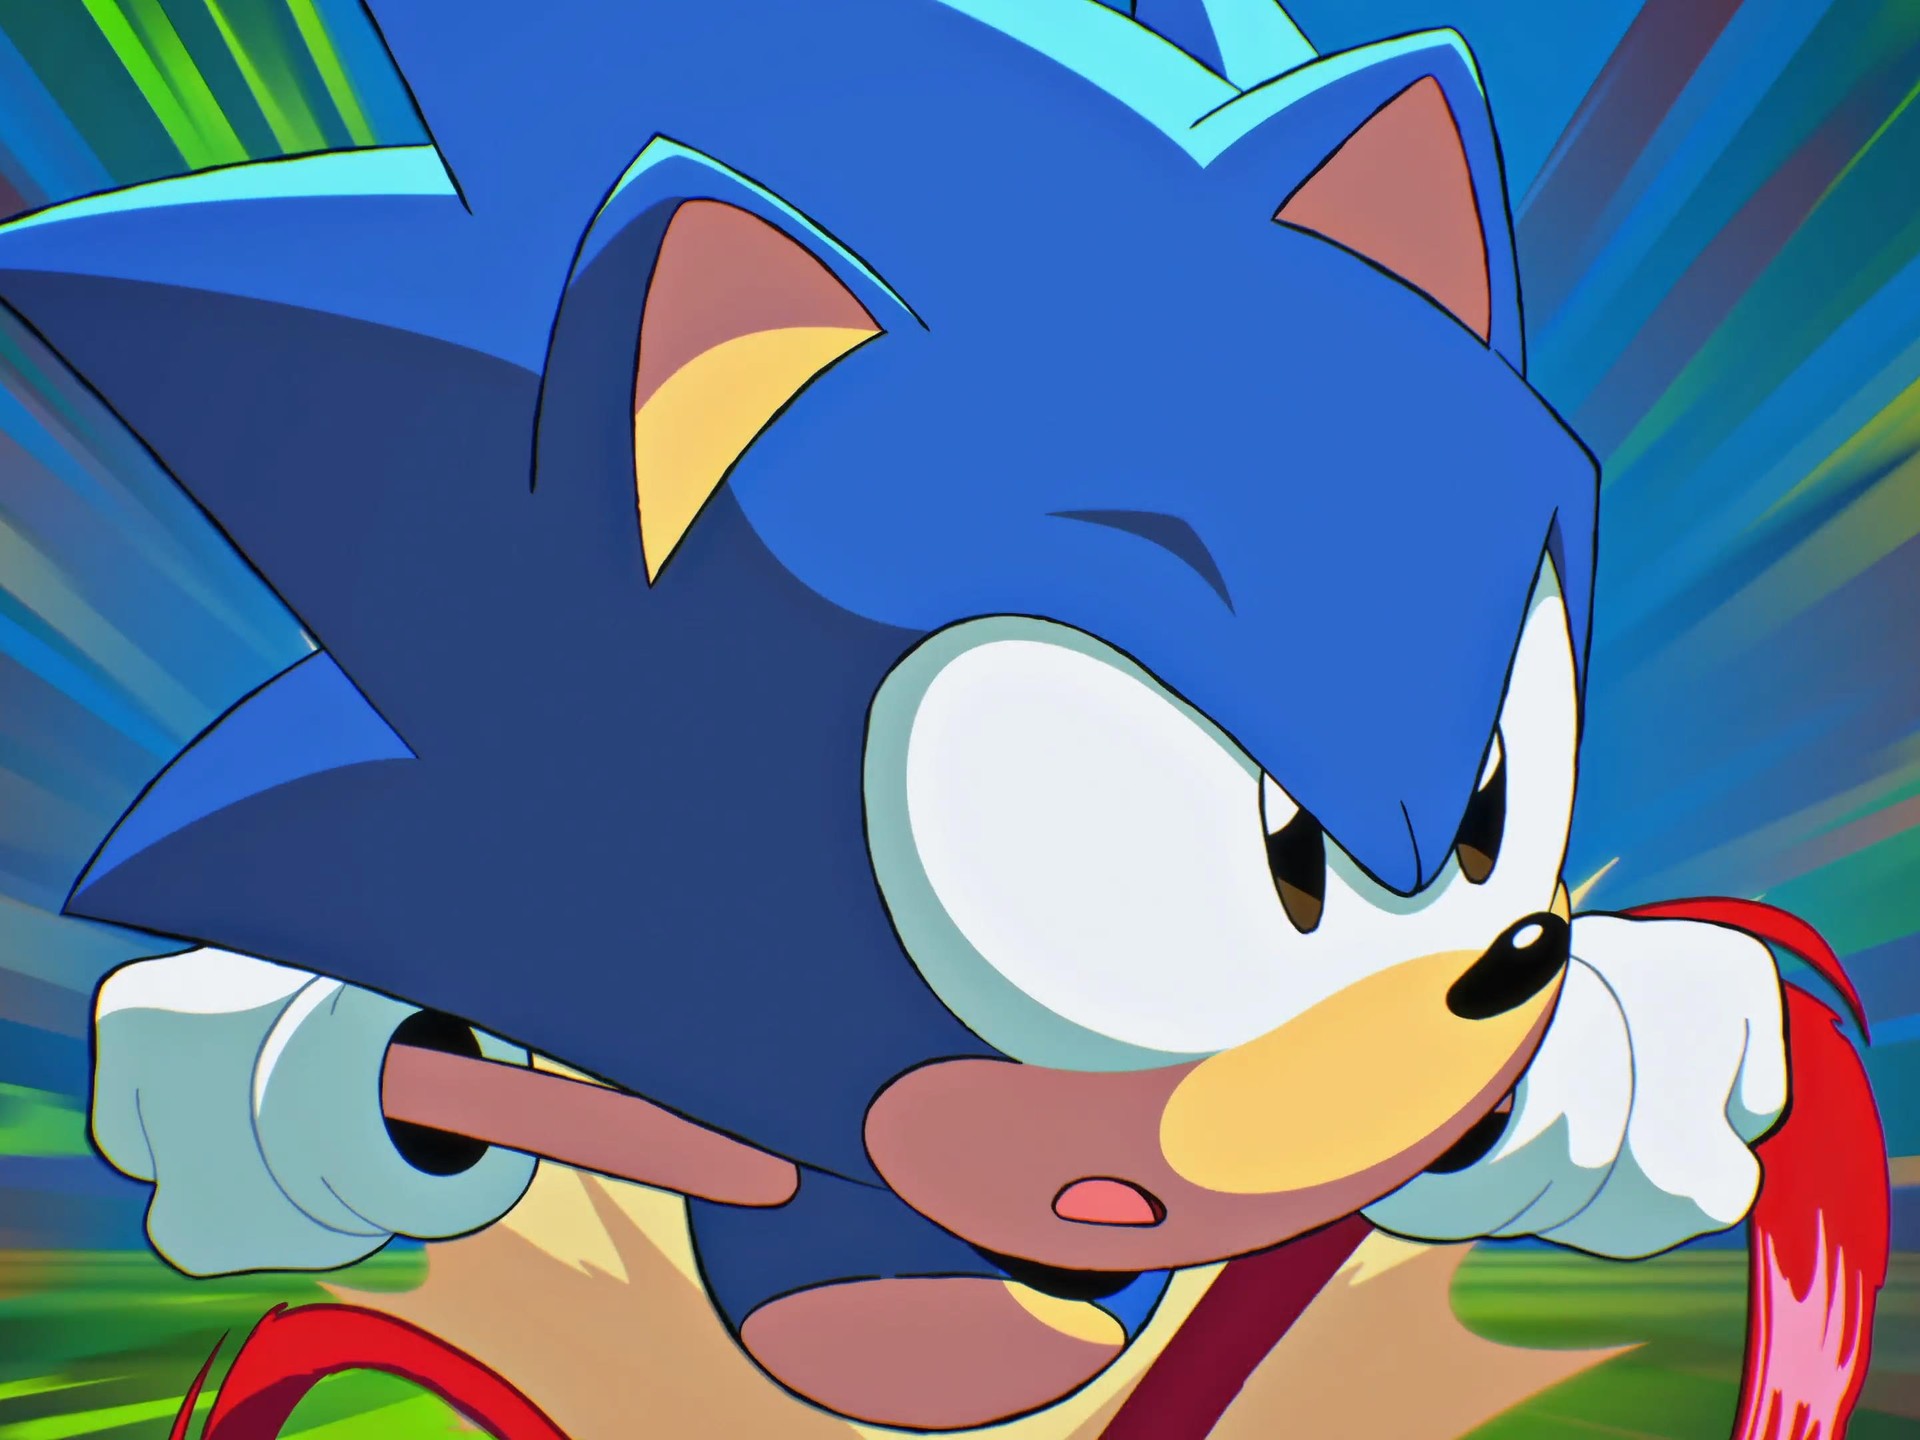 Segundo episódio de Sonic 4 tem data de lançamento revelada